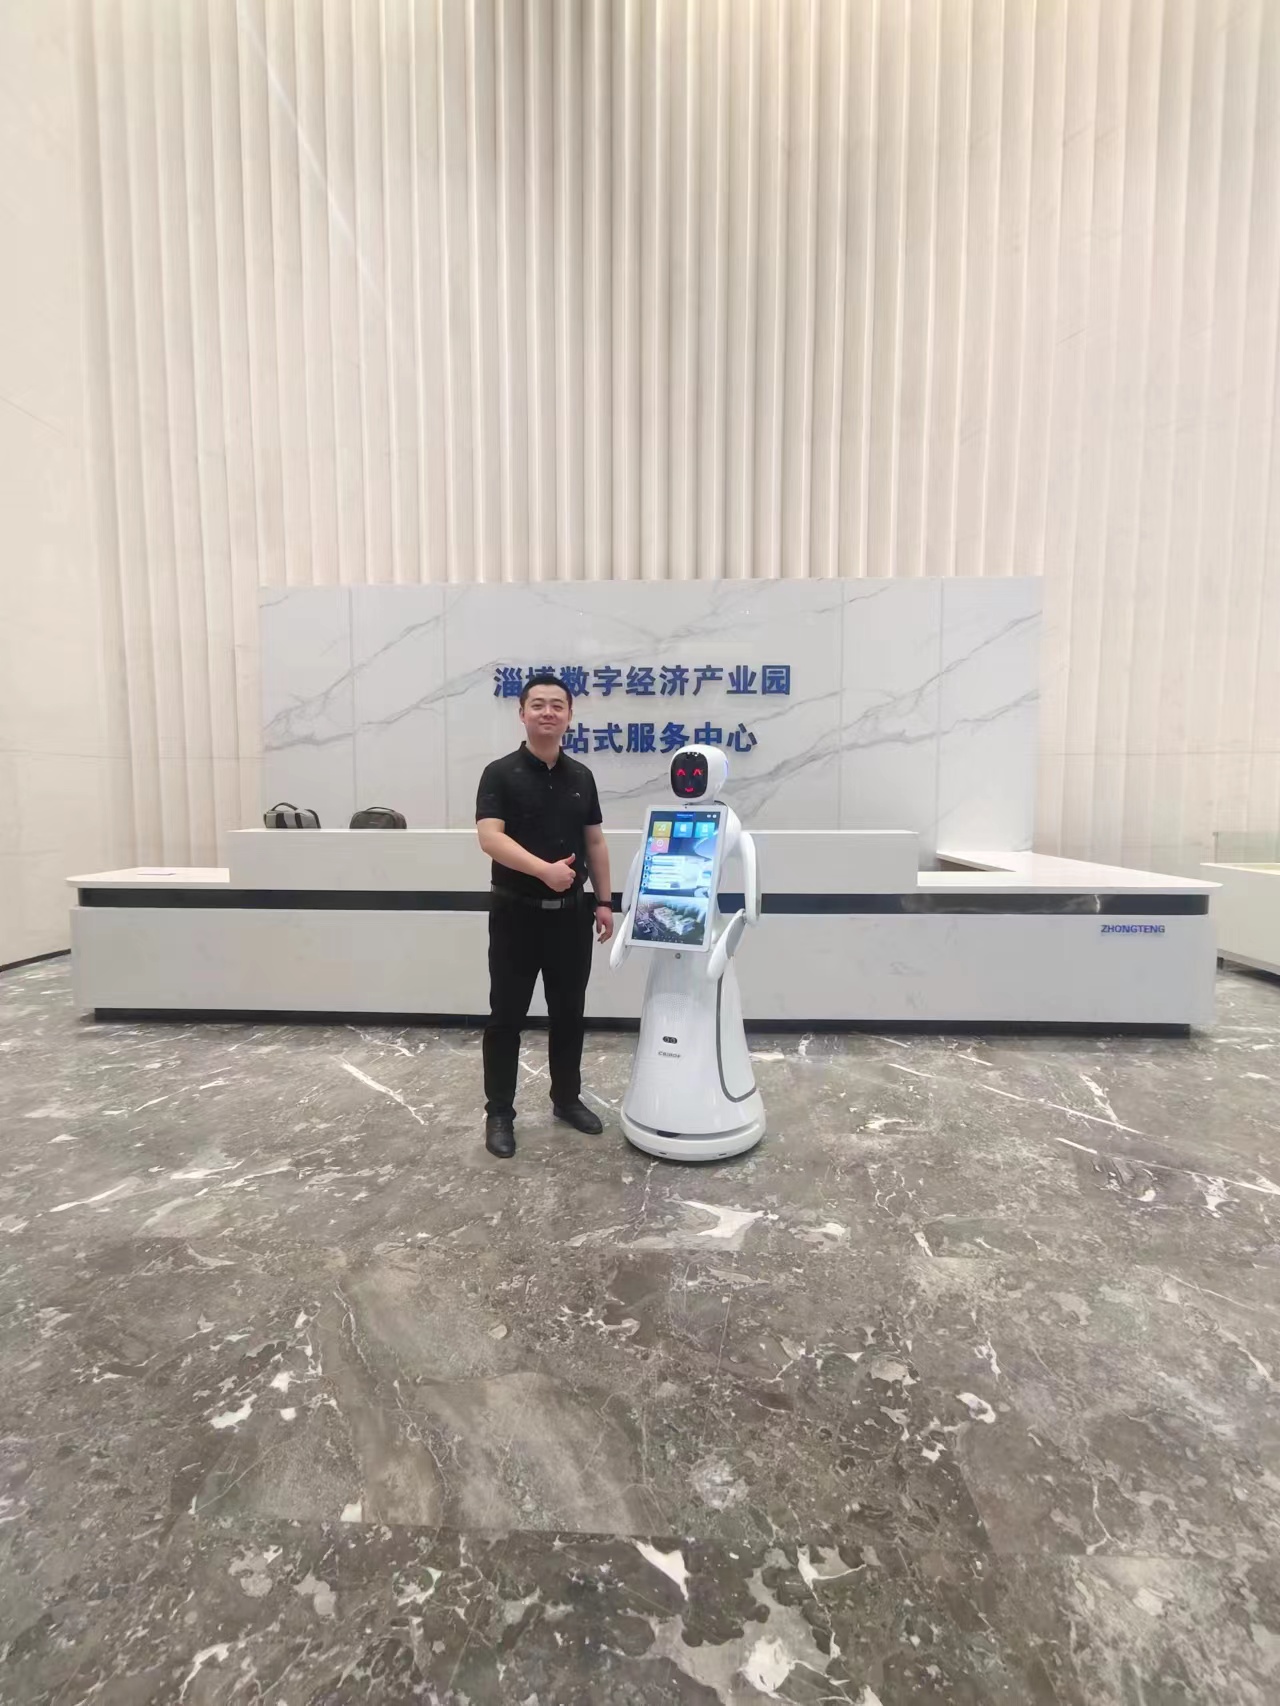 Khu công nghiệp kinh tế số Zibo: Robot dịch vụ AI AI dẫn đầu chuyến thăm thông minh Trải nghiệm mới